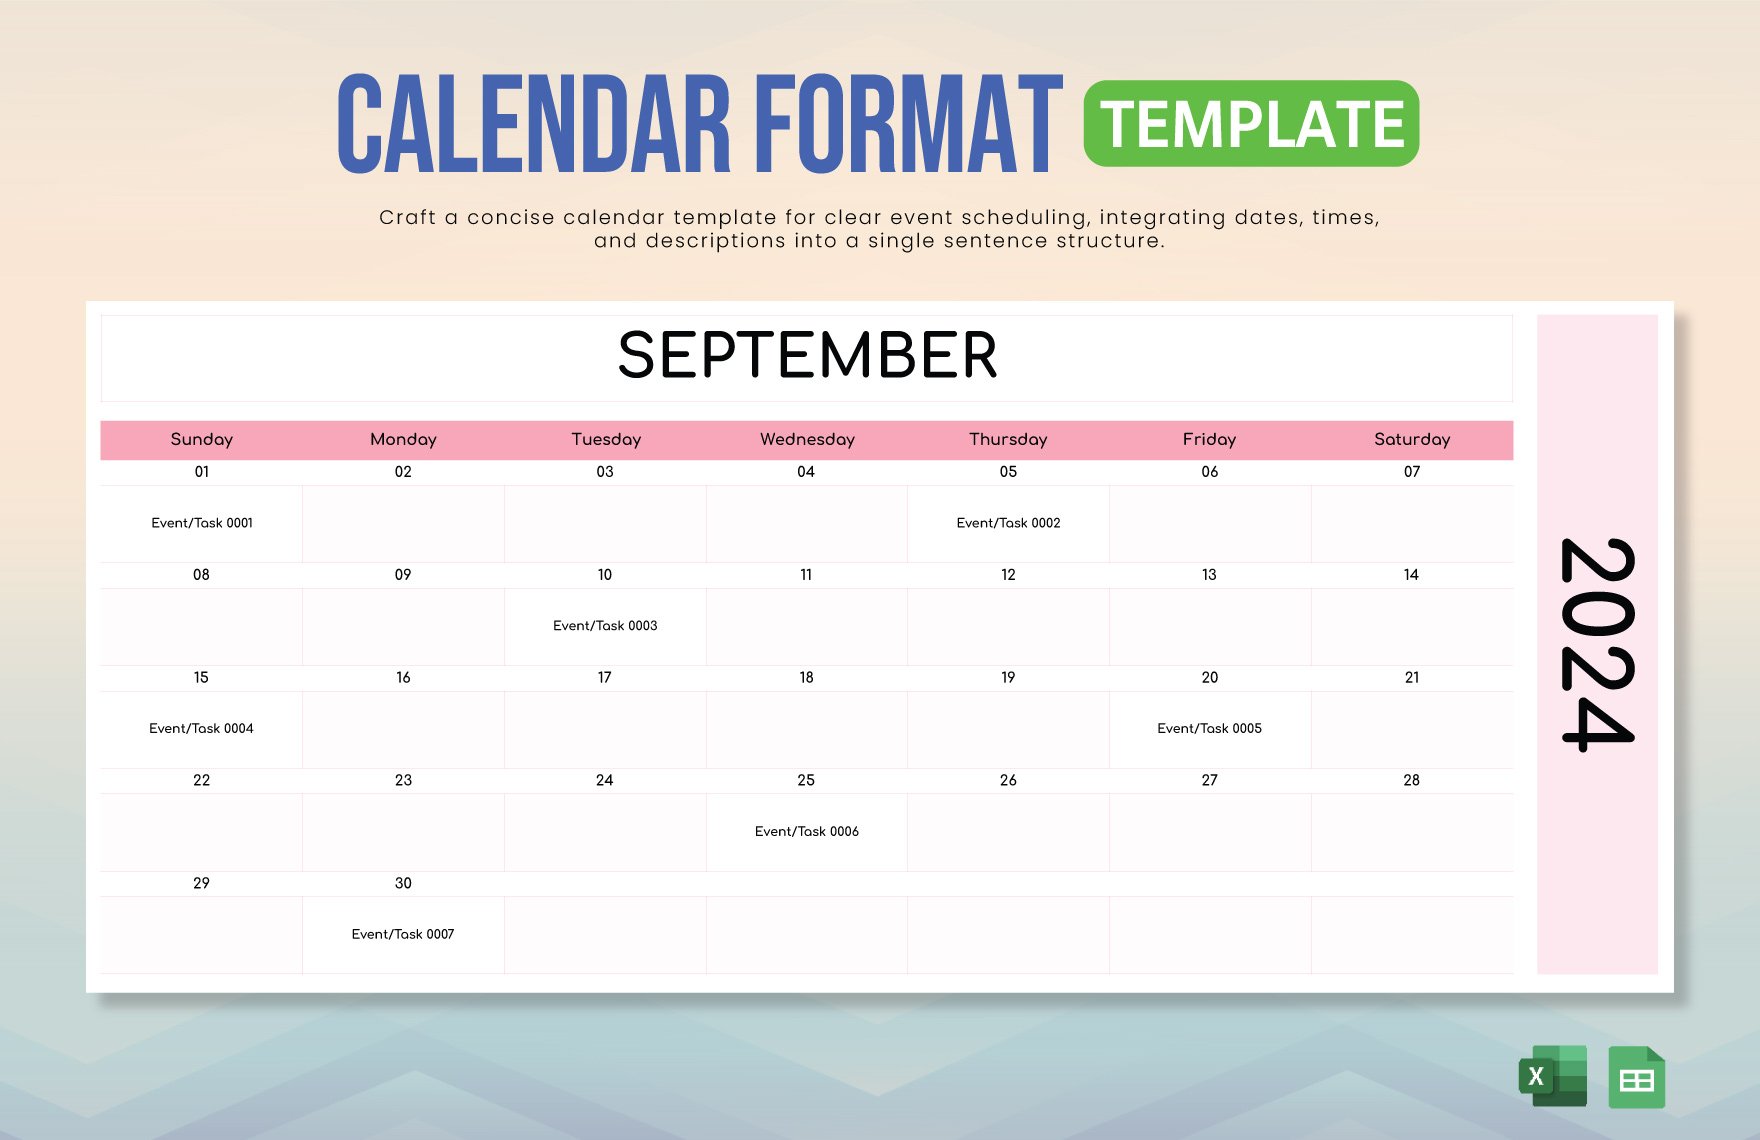 Free Calendar Format Template